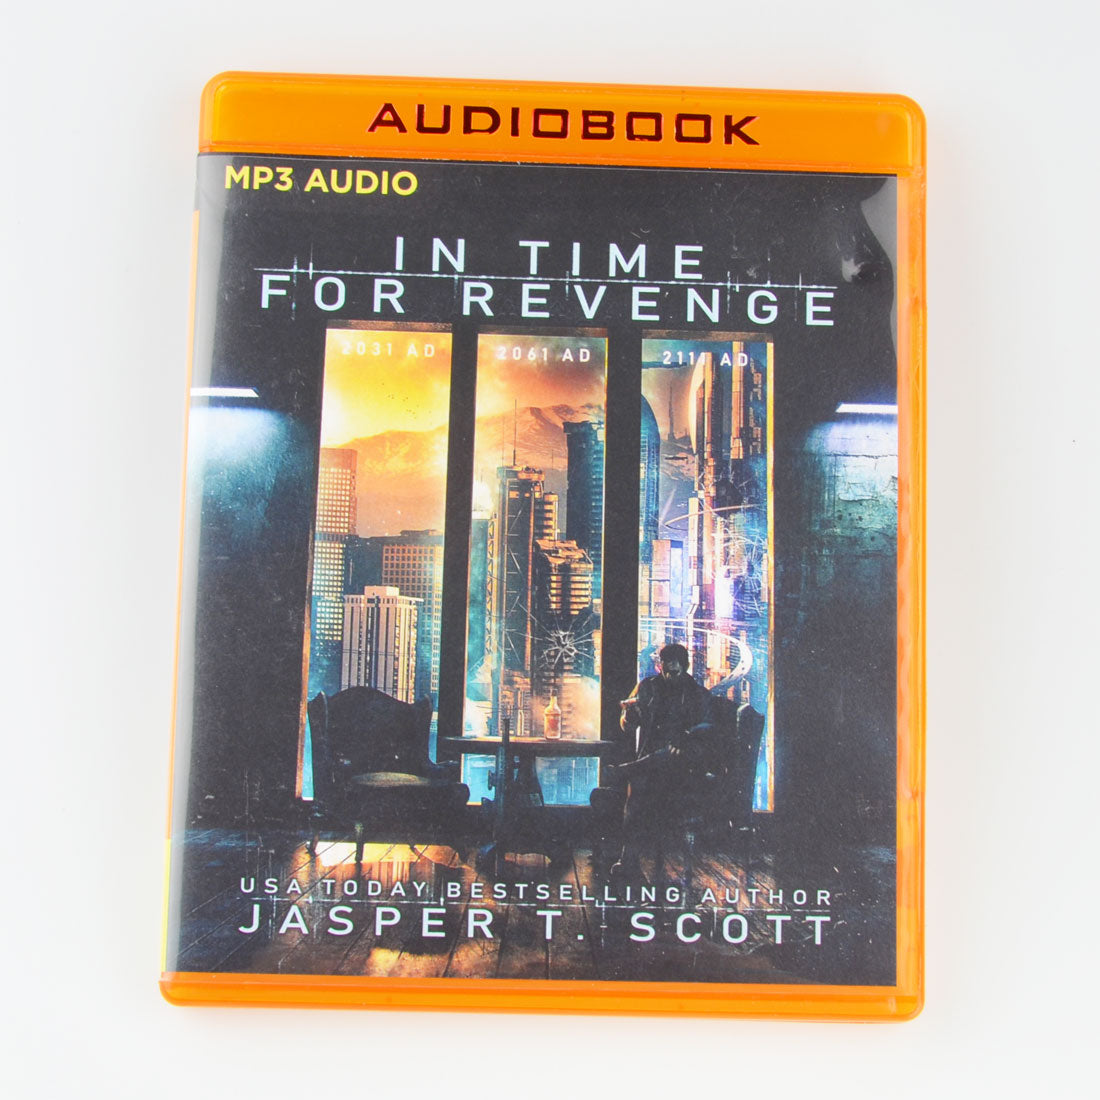 In Time For Revenge by Jasper T. Scott - Sci-Fi - MP3 CD Audio